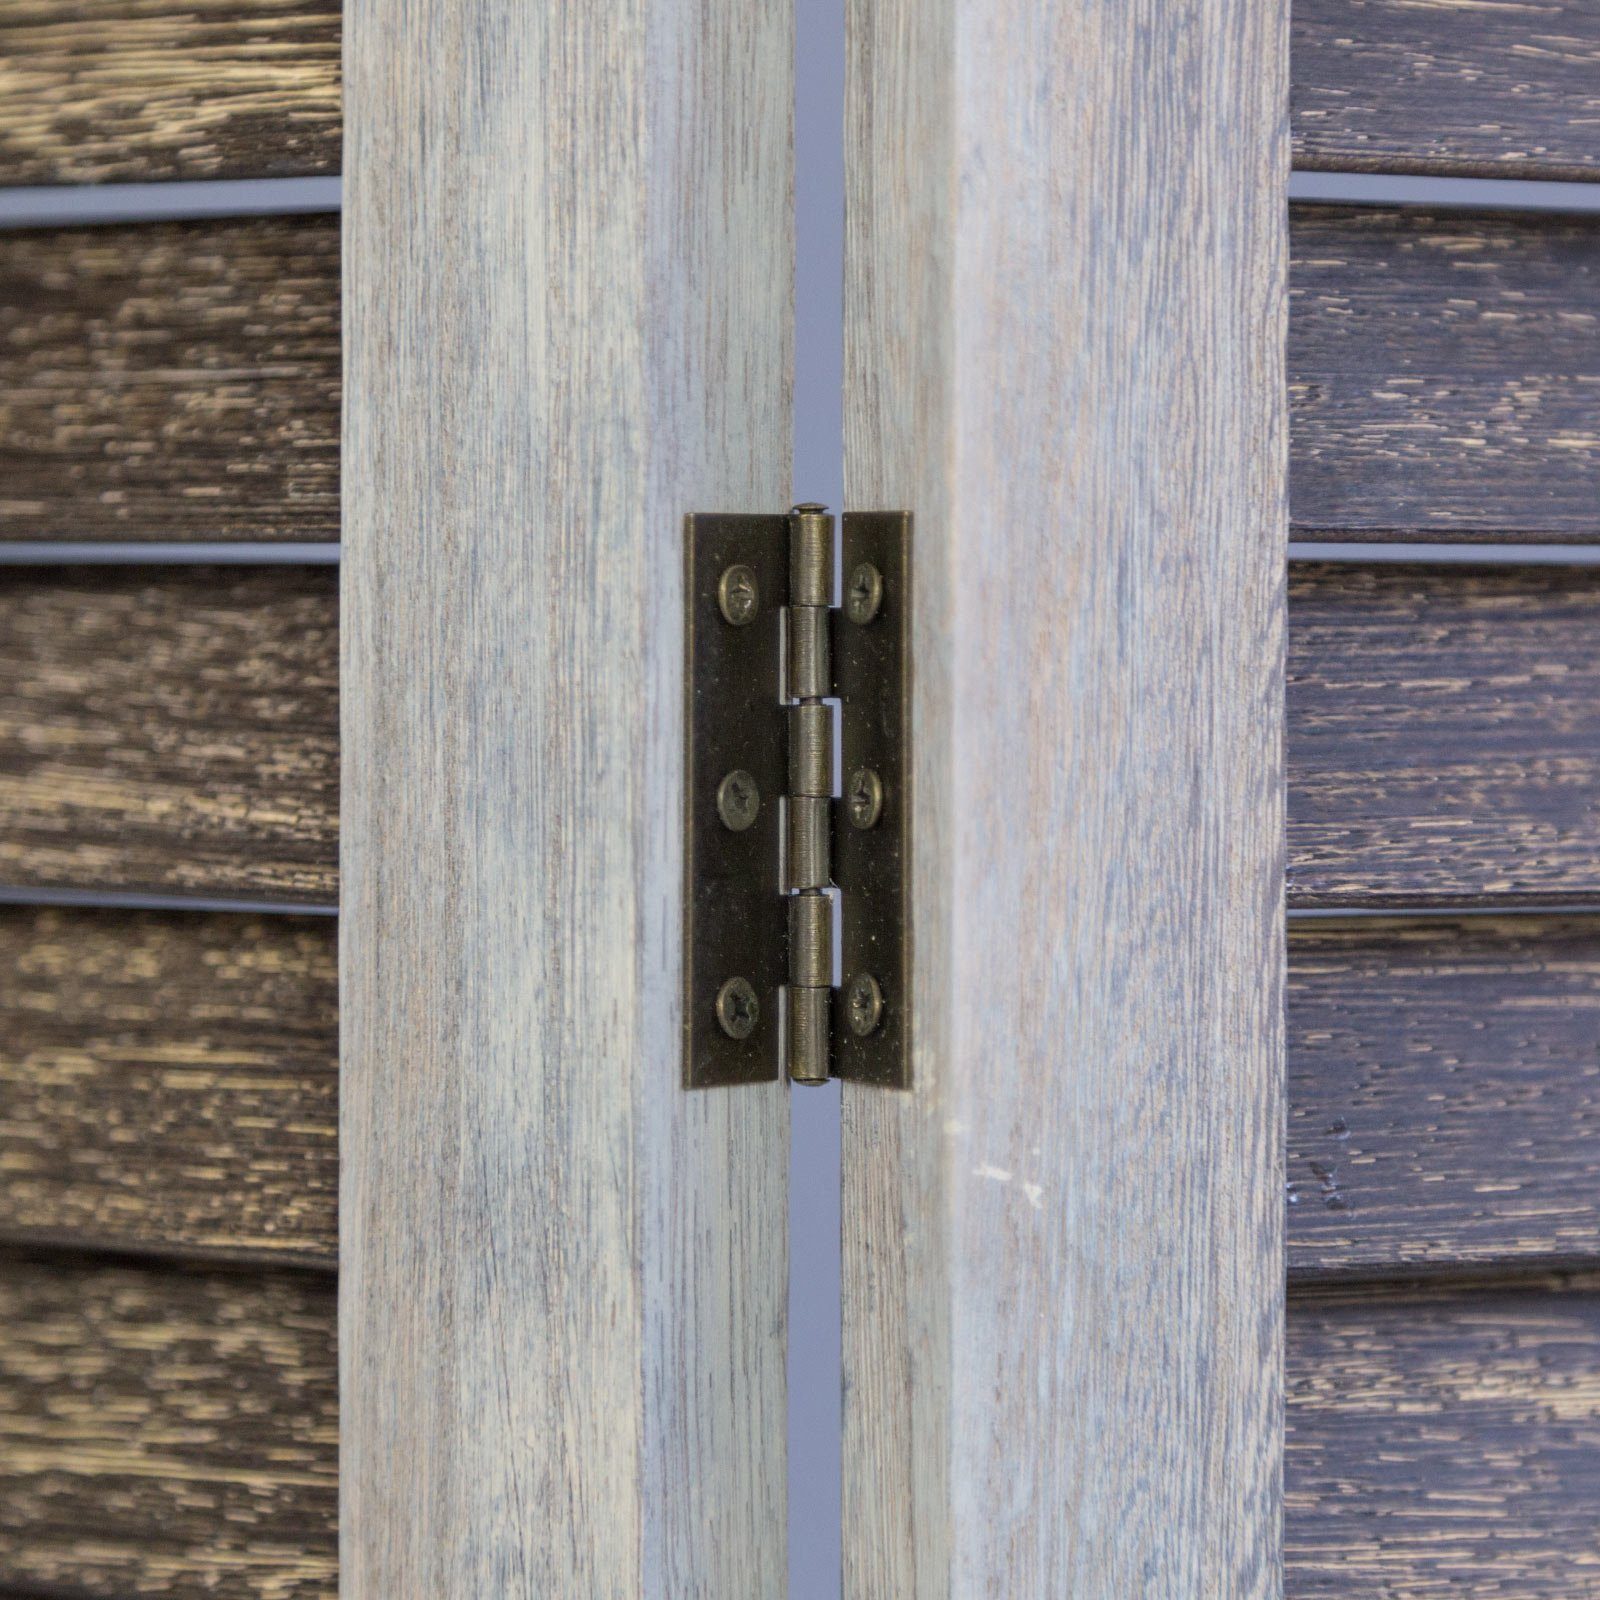 Homestyle4u Paravent 3 fach Holz Raumteiler Trennwand Sichtschutz